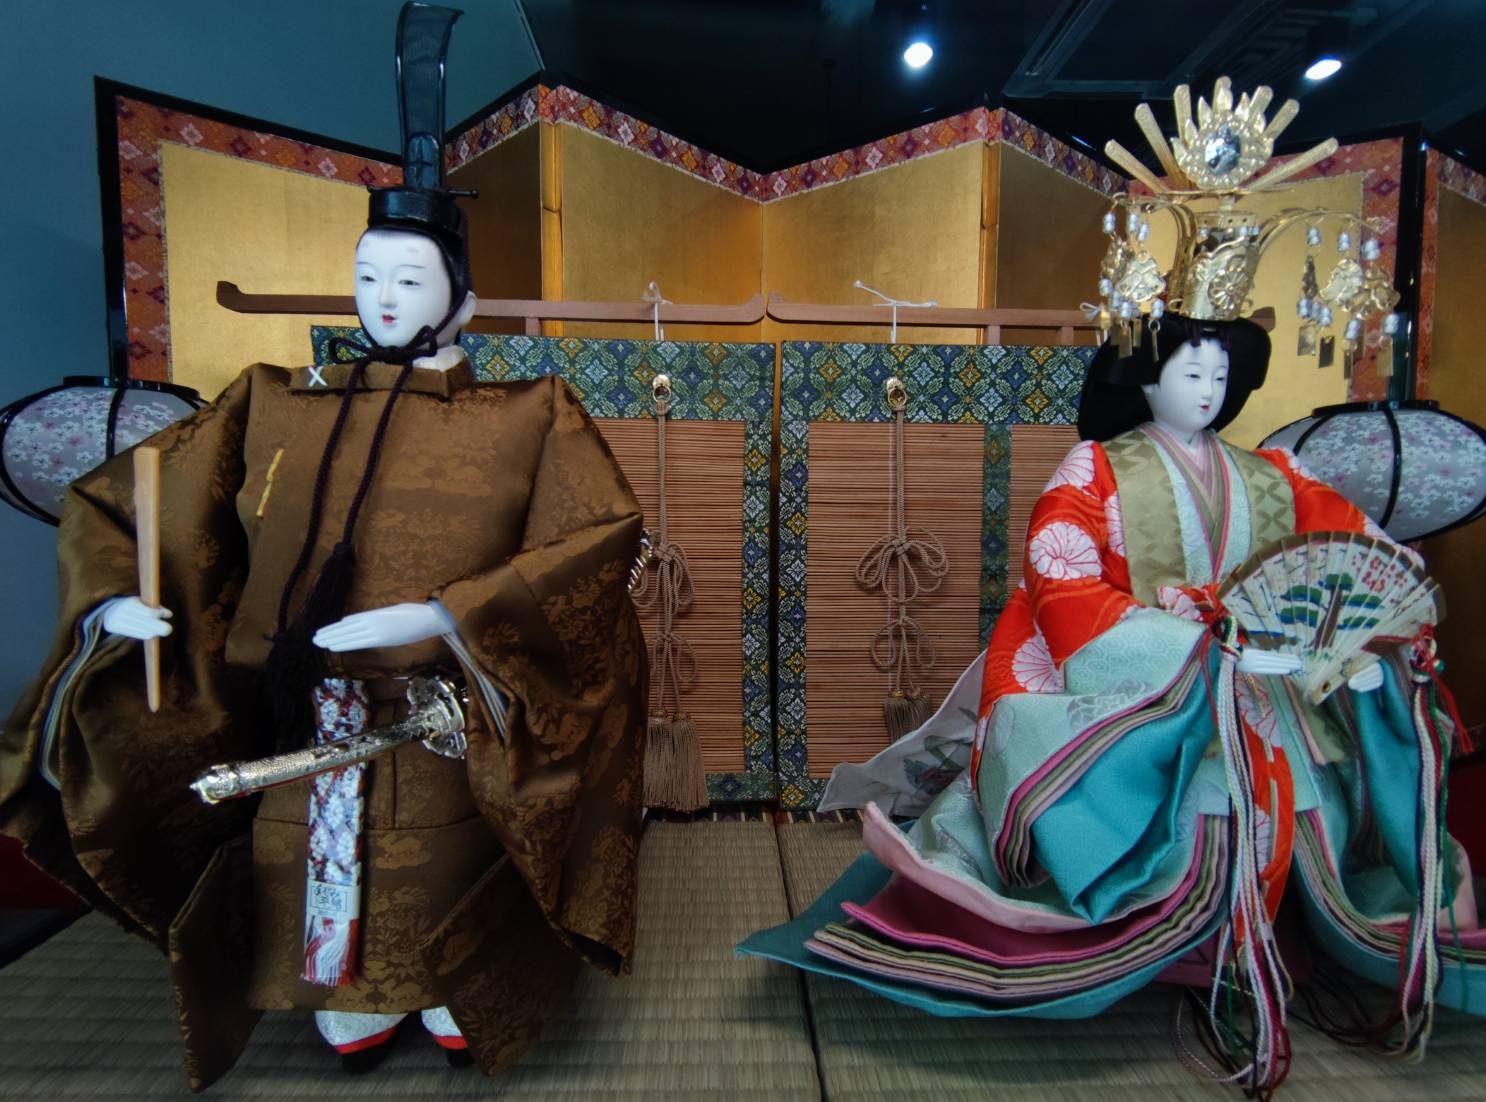 ม.หอการค้าไทย ขอเชิญชมนิทรรศการตุ๊กตาญี่ปุ่น (????, Nihon-ningyoo) 1- 5 มีนาคม 65 ณ อาคาร 1 ม.หอการค้าไทย